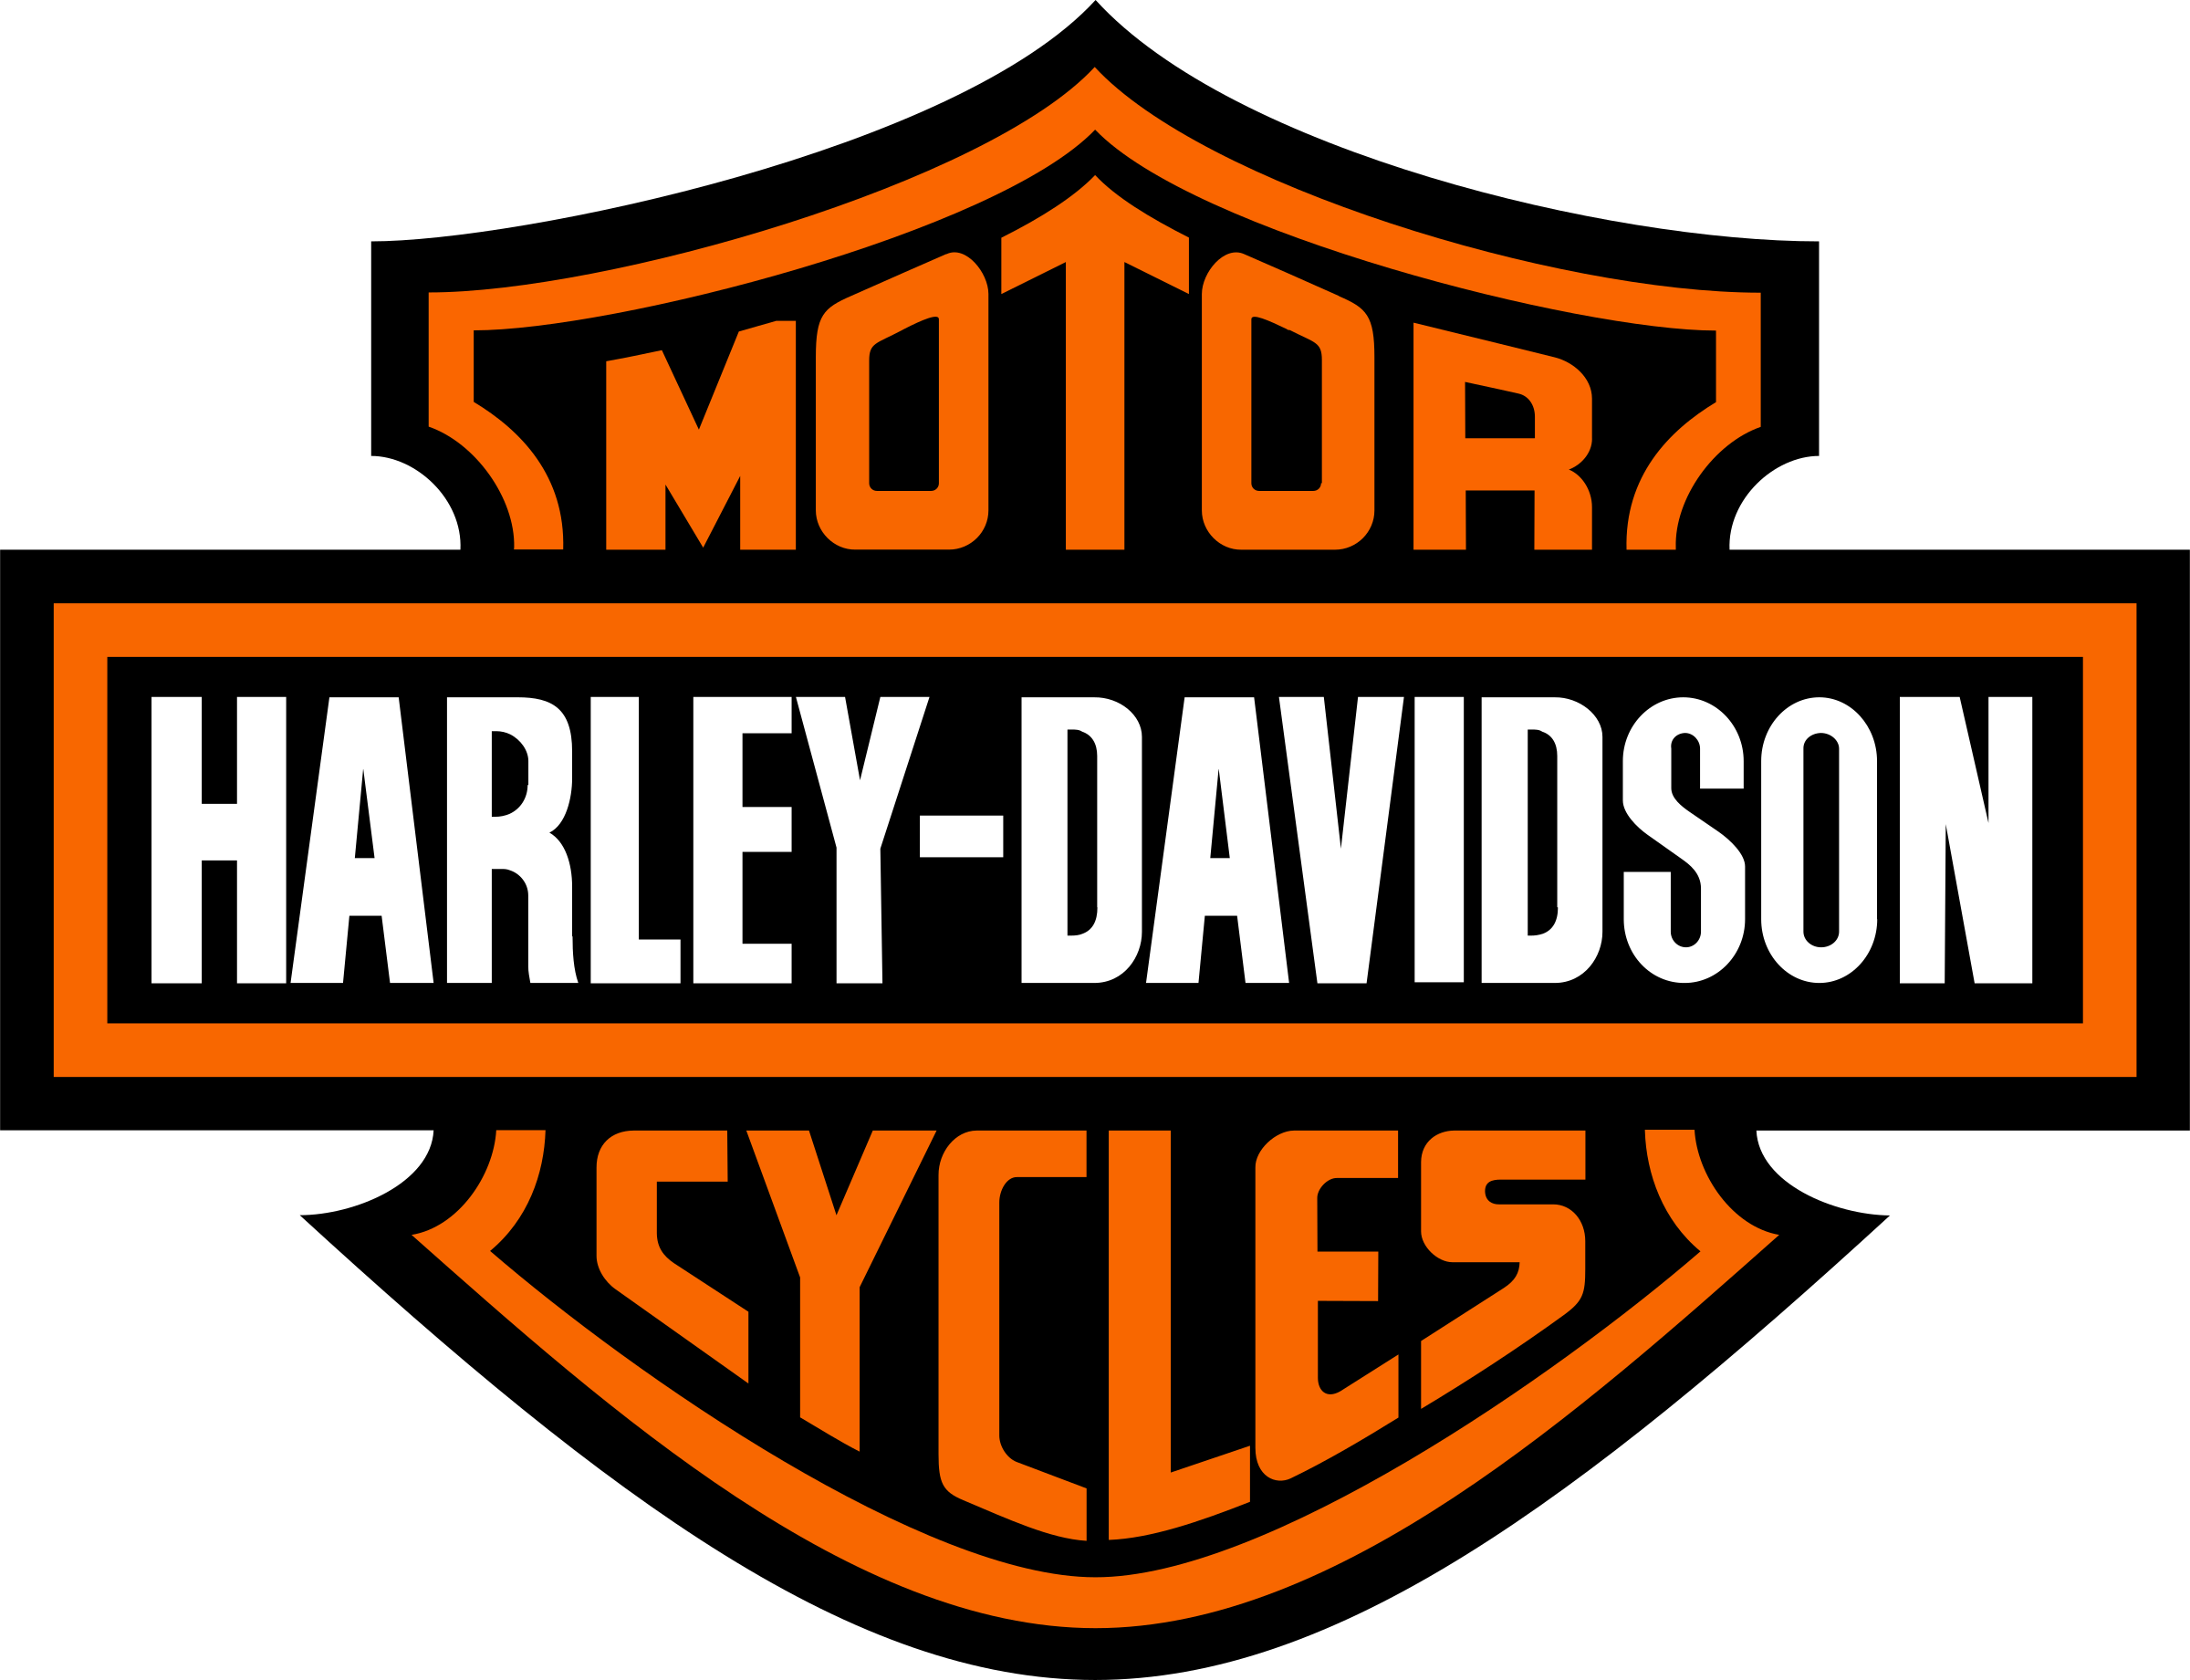 Harley Davidson Logo: Recognizable emblem of the Harley Davidson brand